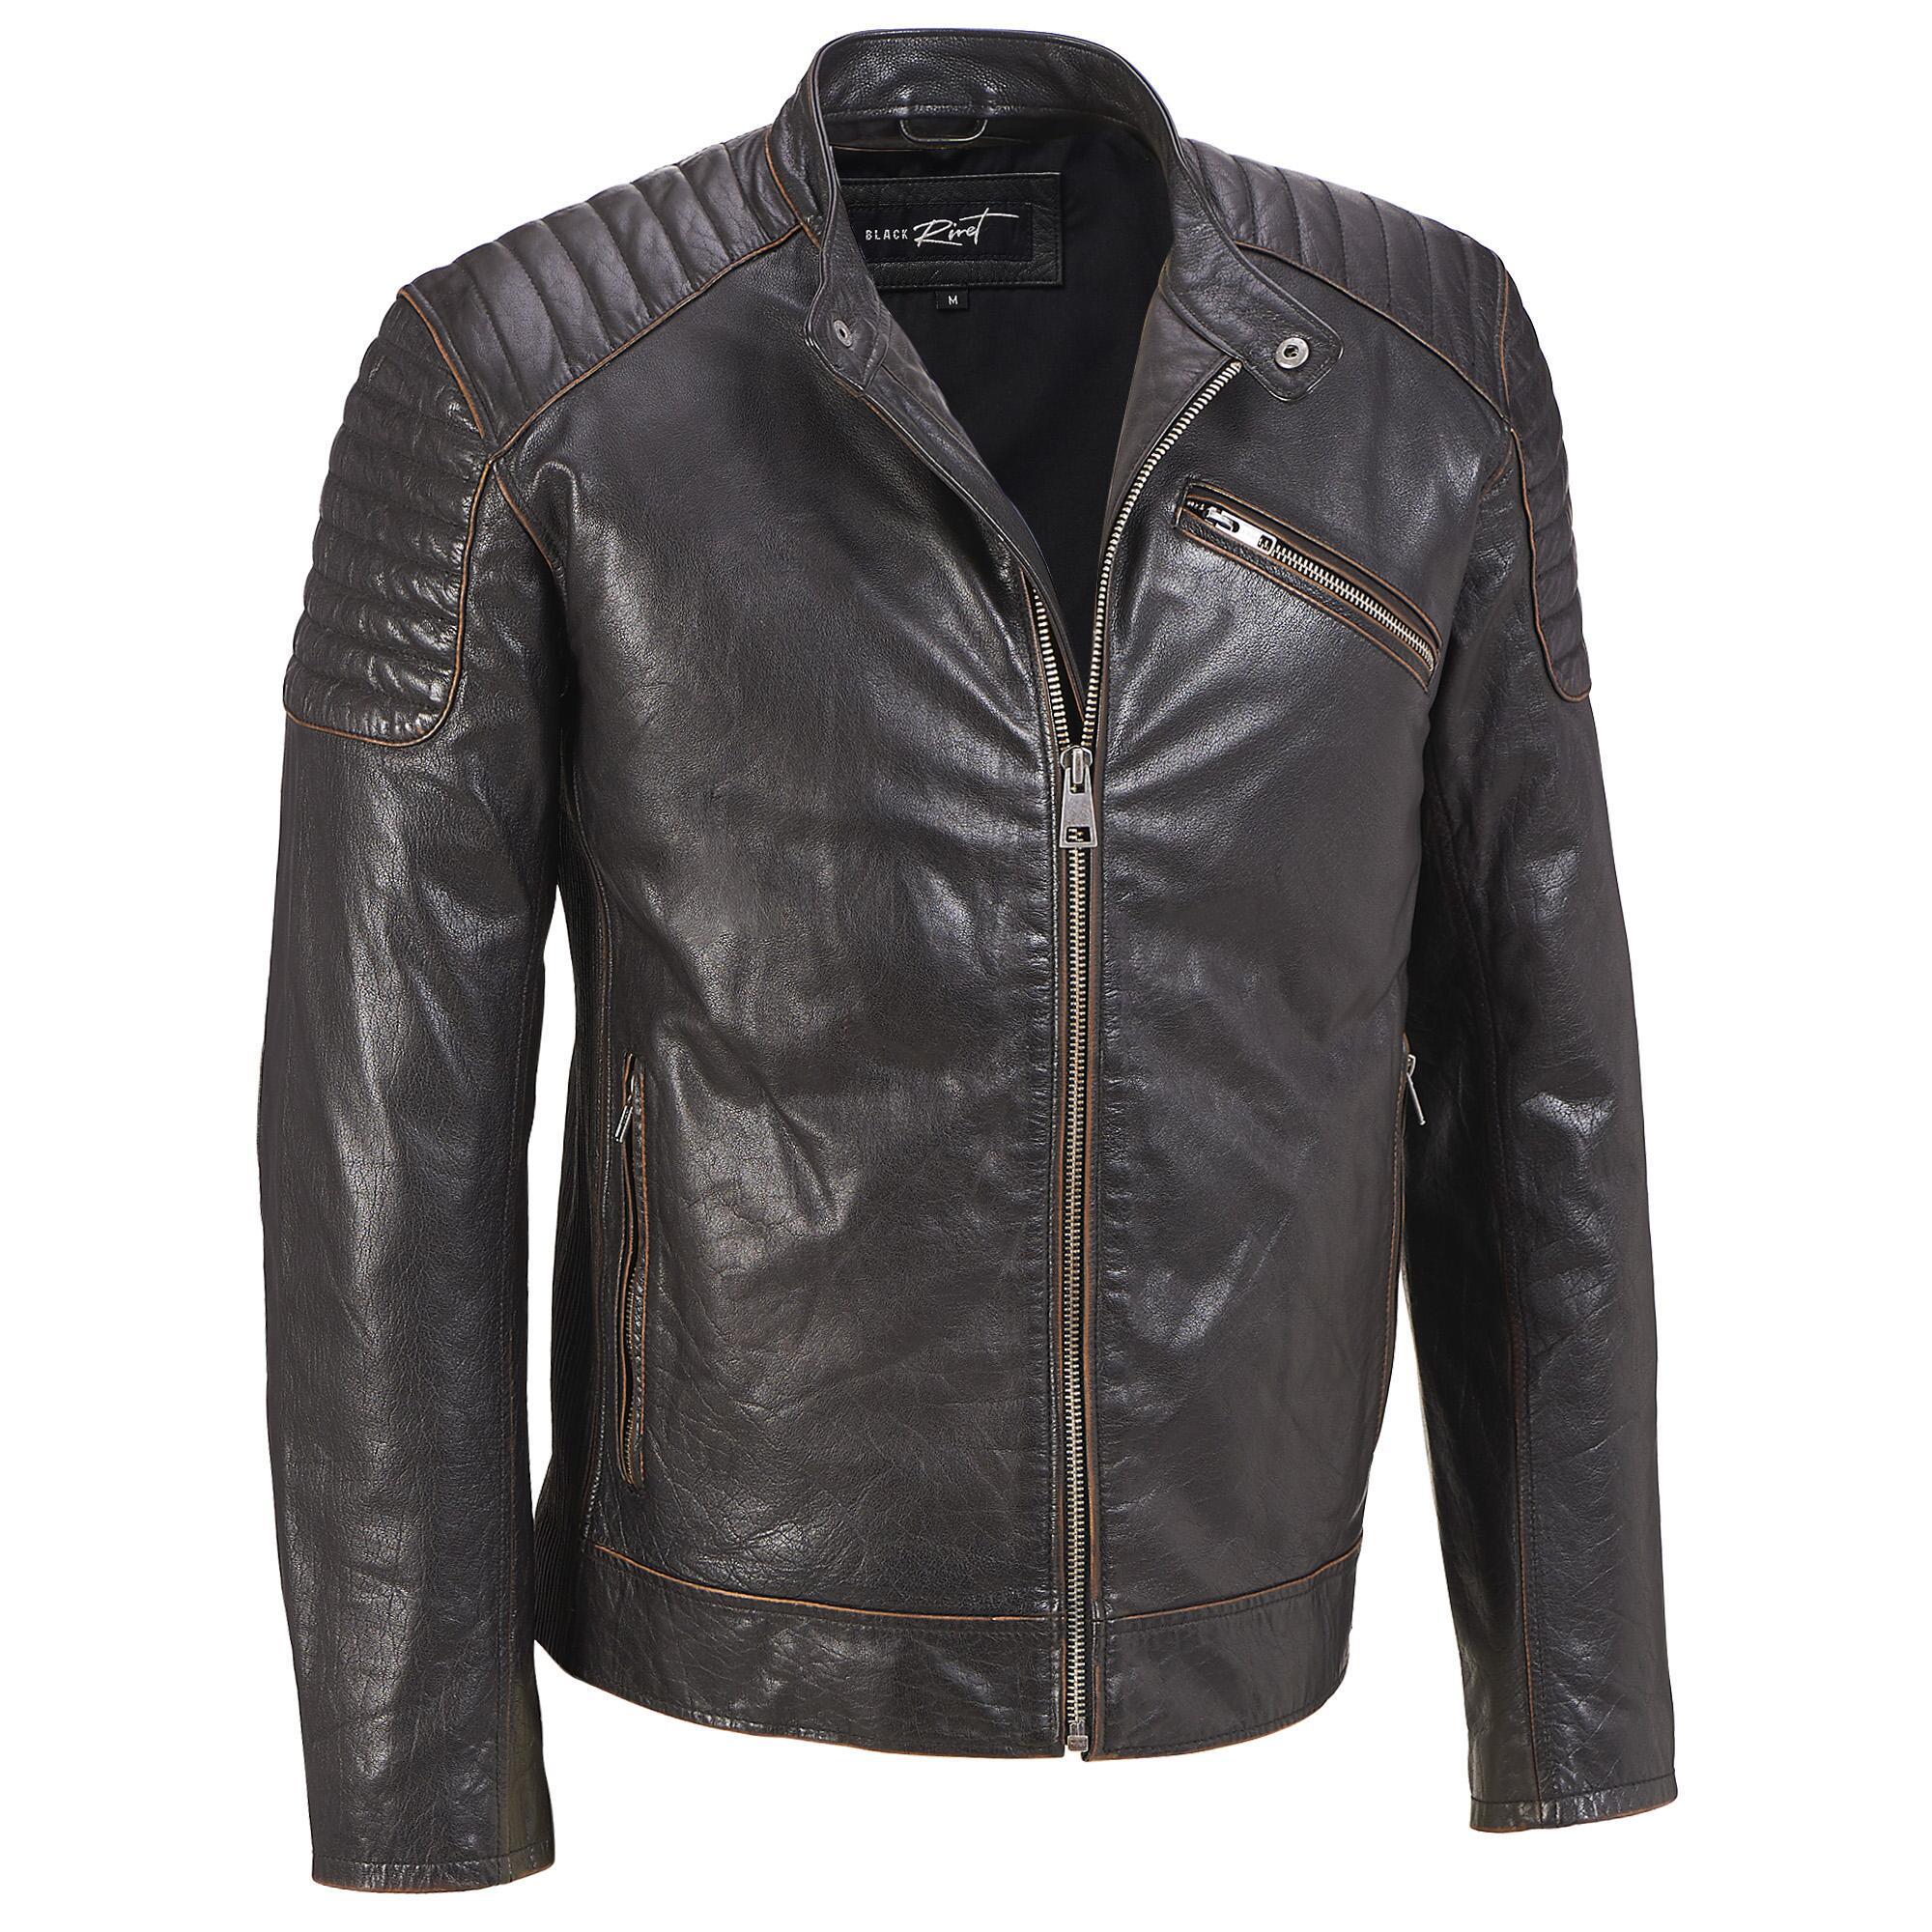 black rivet leather jacket sizing